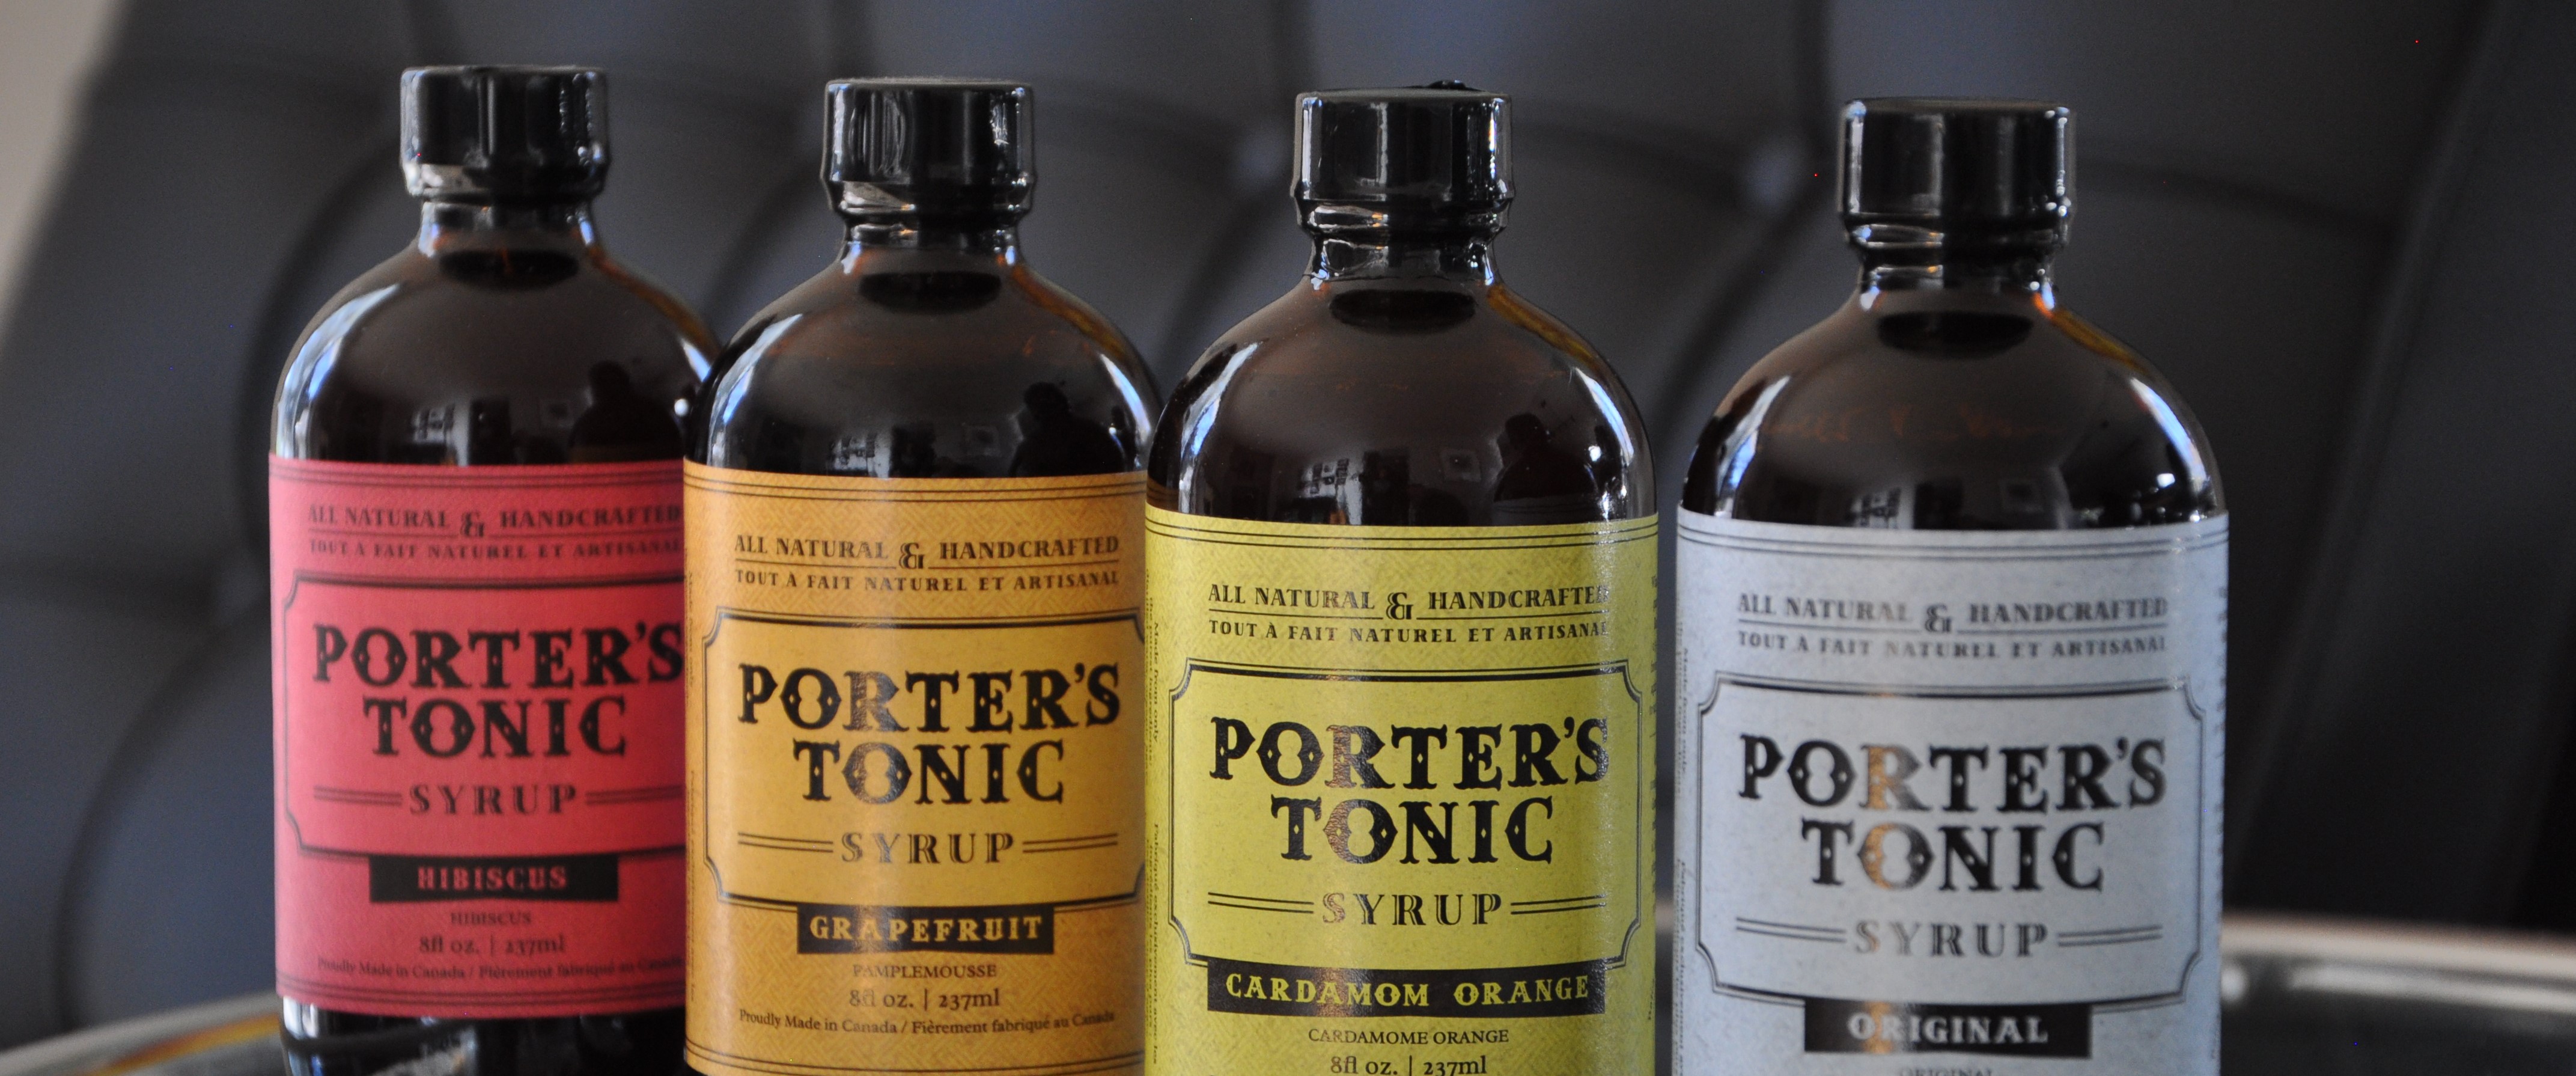 Set of 4 Porter's Tonic bottles